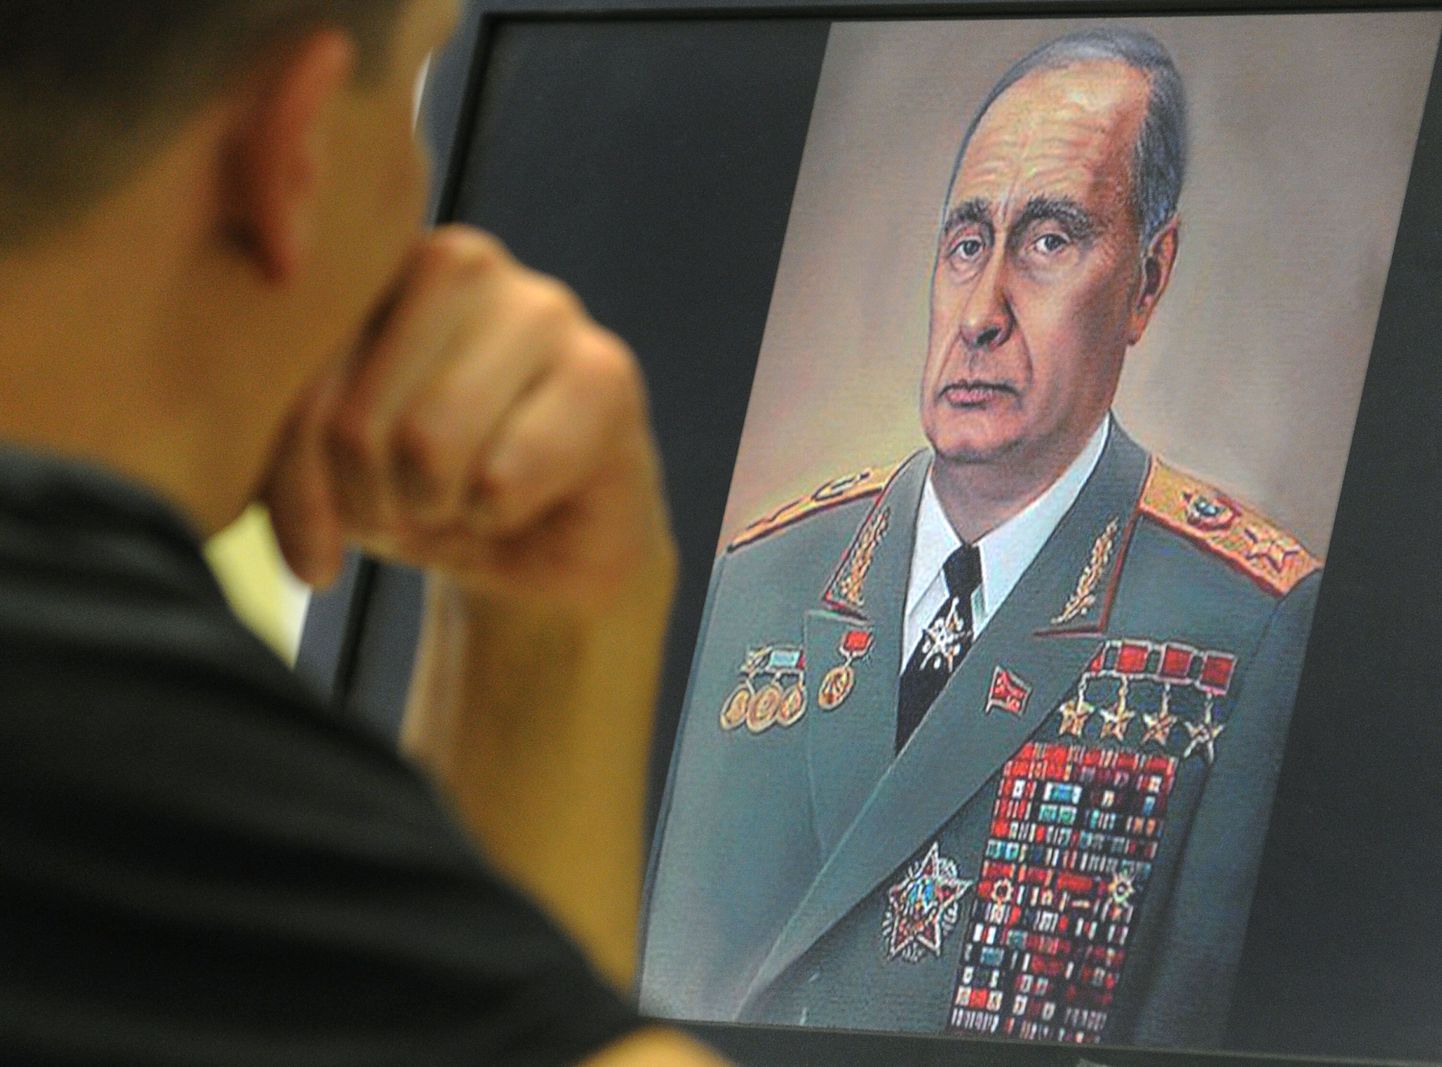 Internetis leviv karikatuur Vladimir Putinist Leonid Brežnevina.